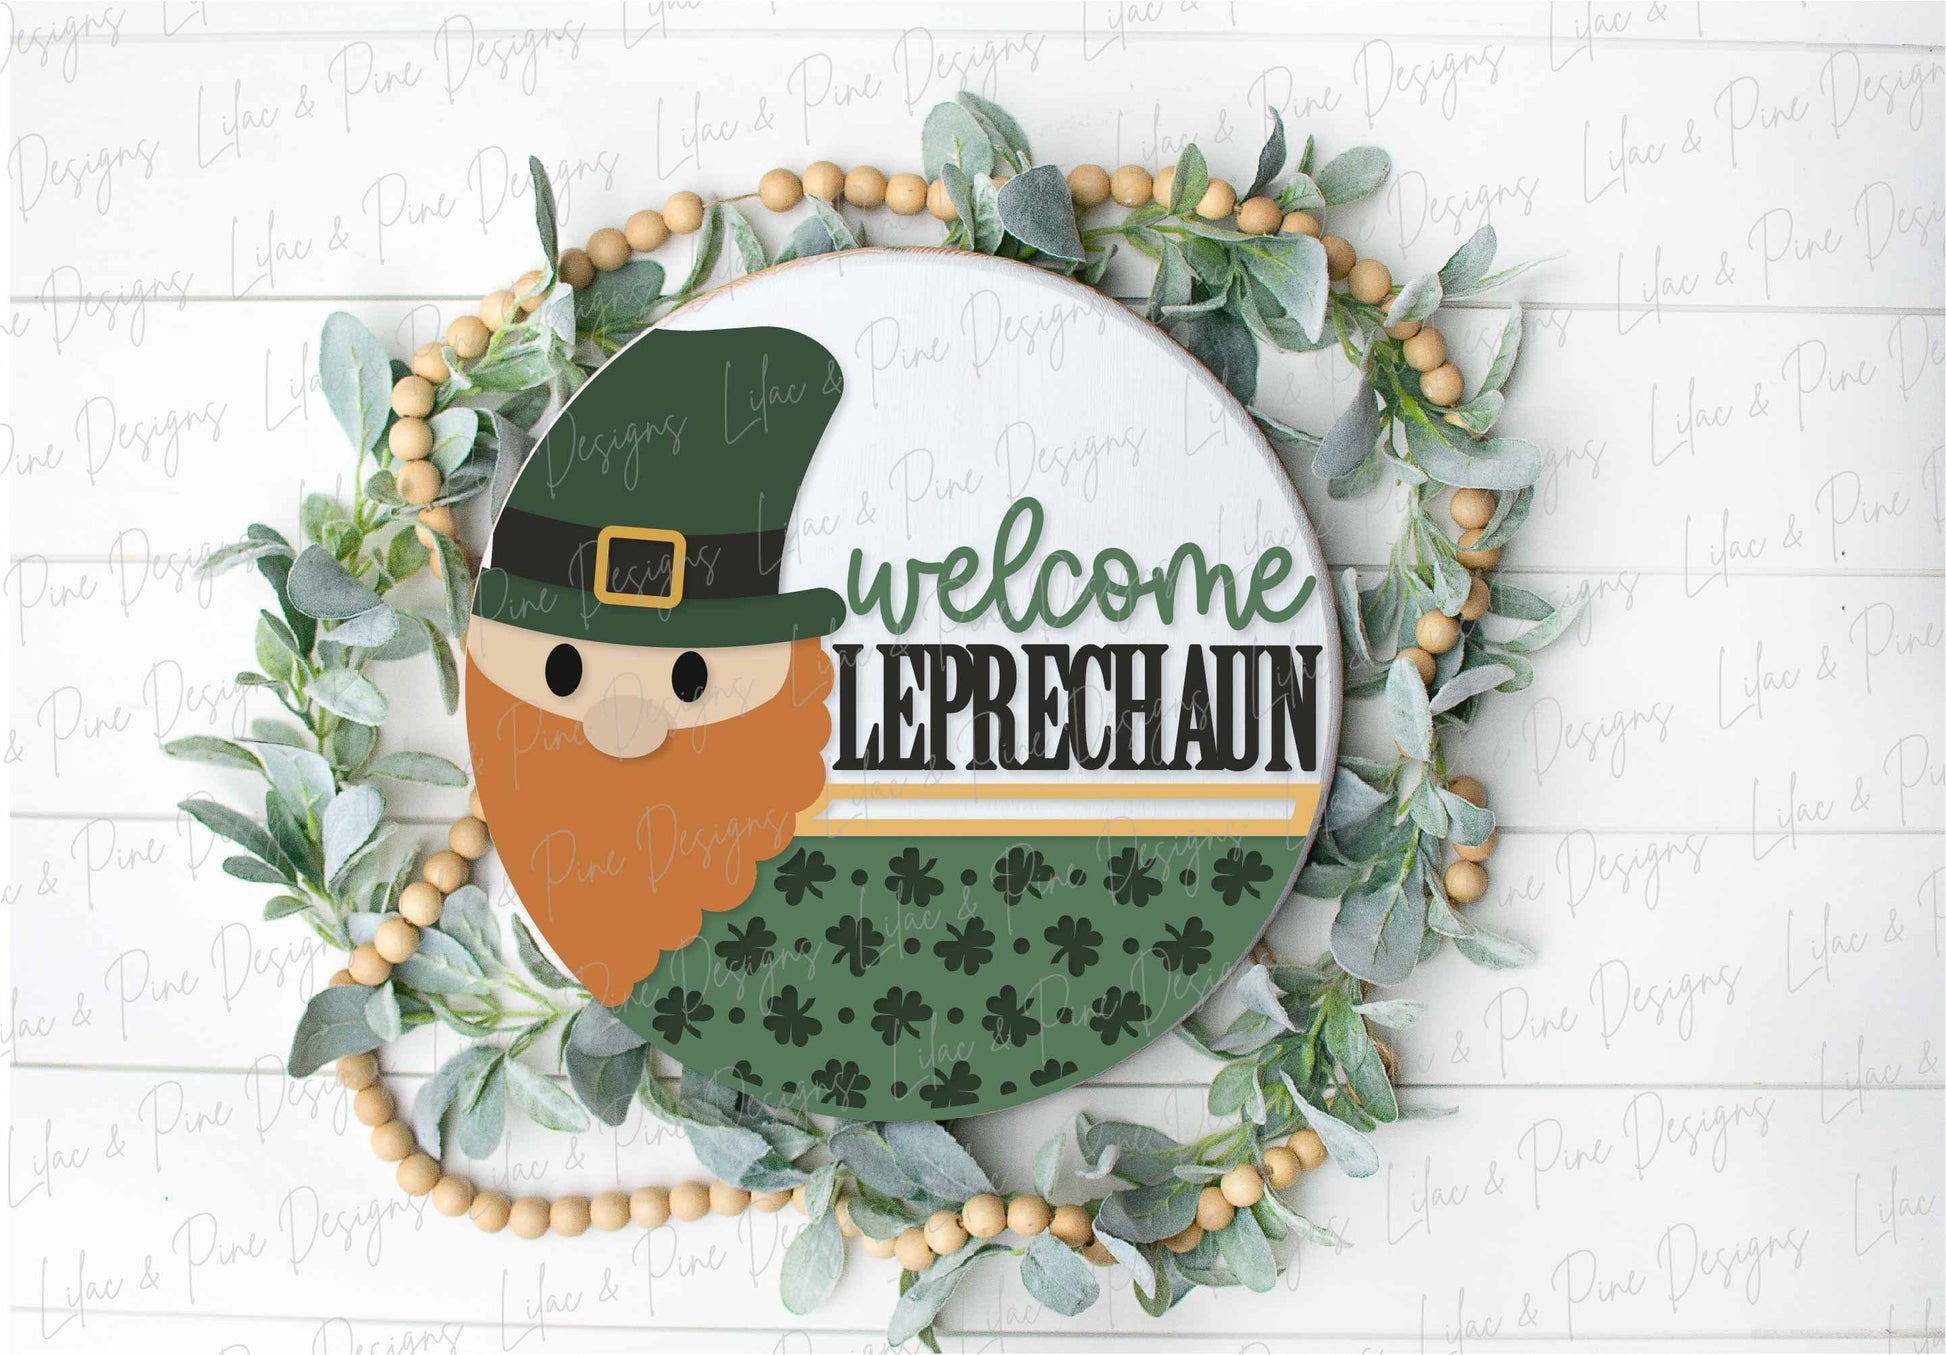 Welcome Leprechaun SVG, St Patricks Day door hanger, St Patty's Welcome sign SVG, Shamrock door round svg, Glowforge SVG, laser cut file